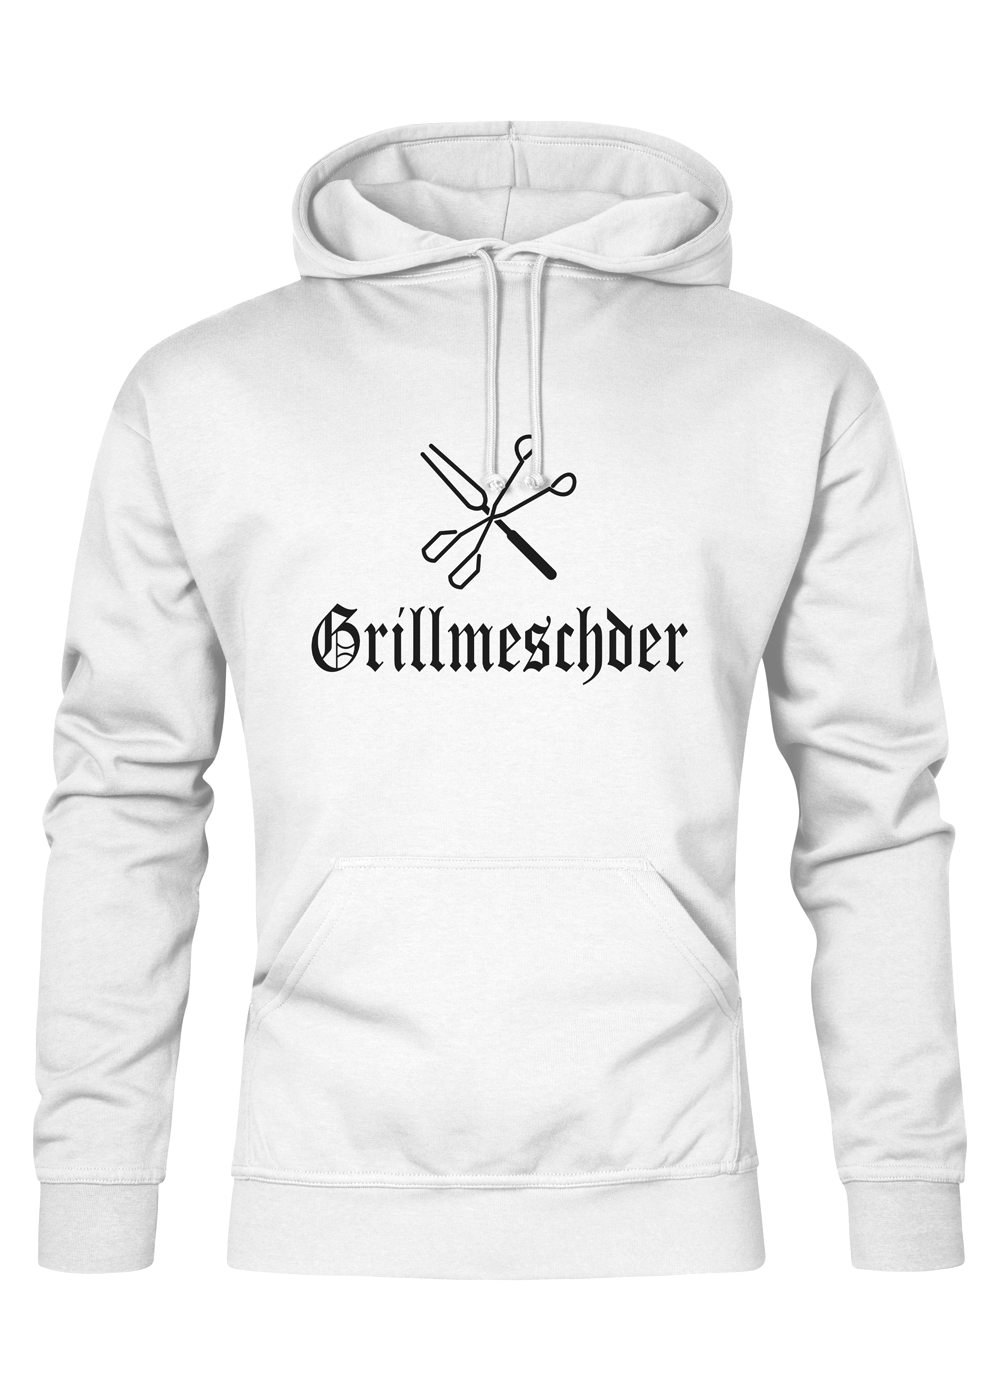 Grillmeschder - Männer Hoodie - Unisex